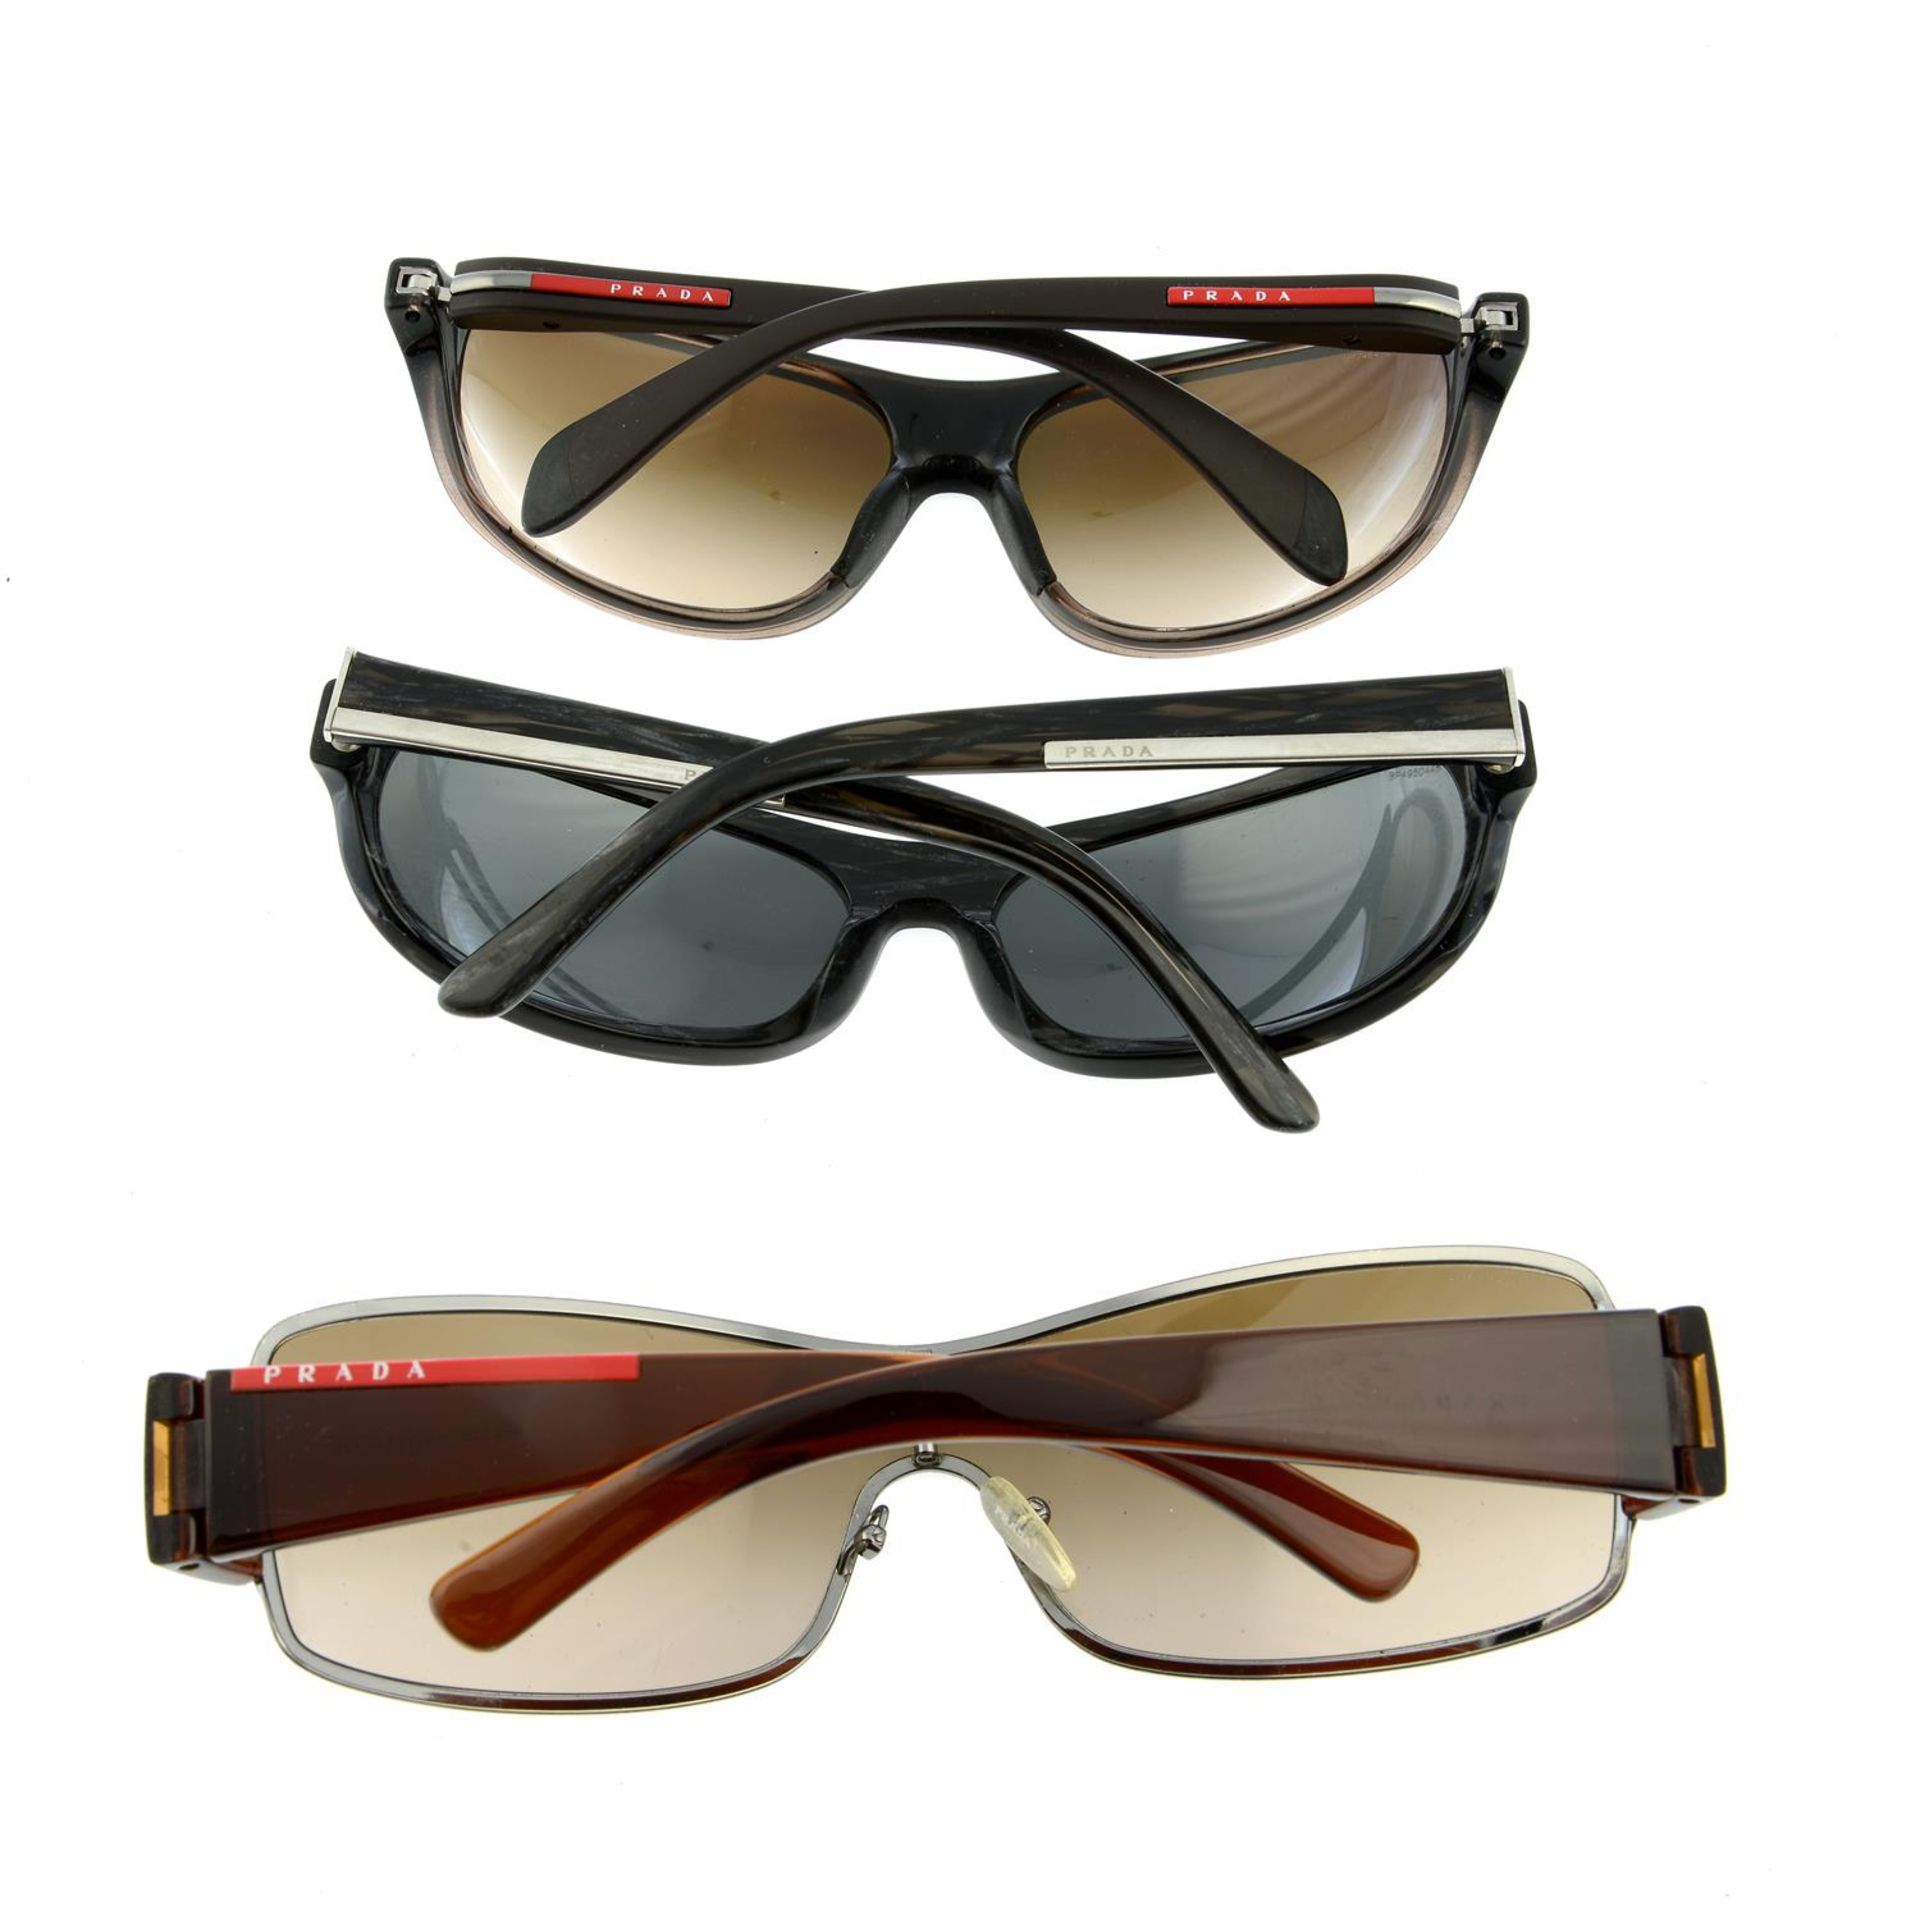 PRADA - three pairs of sunglasses. - Image 2 of 3